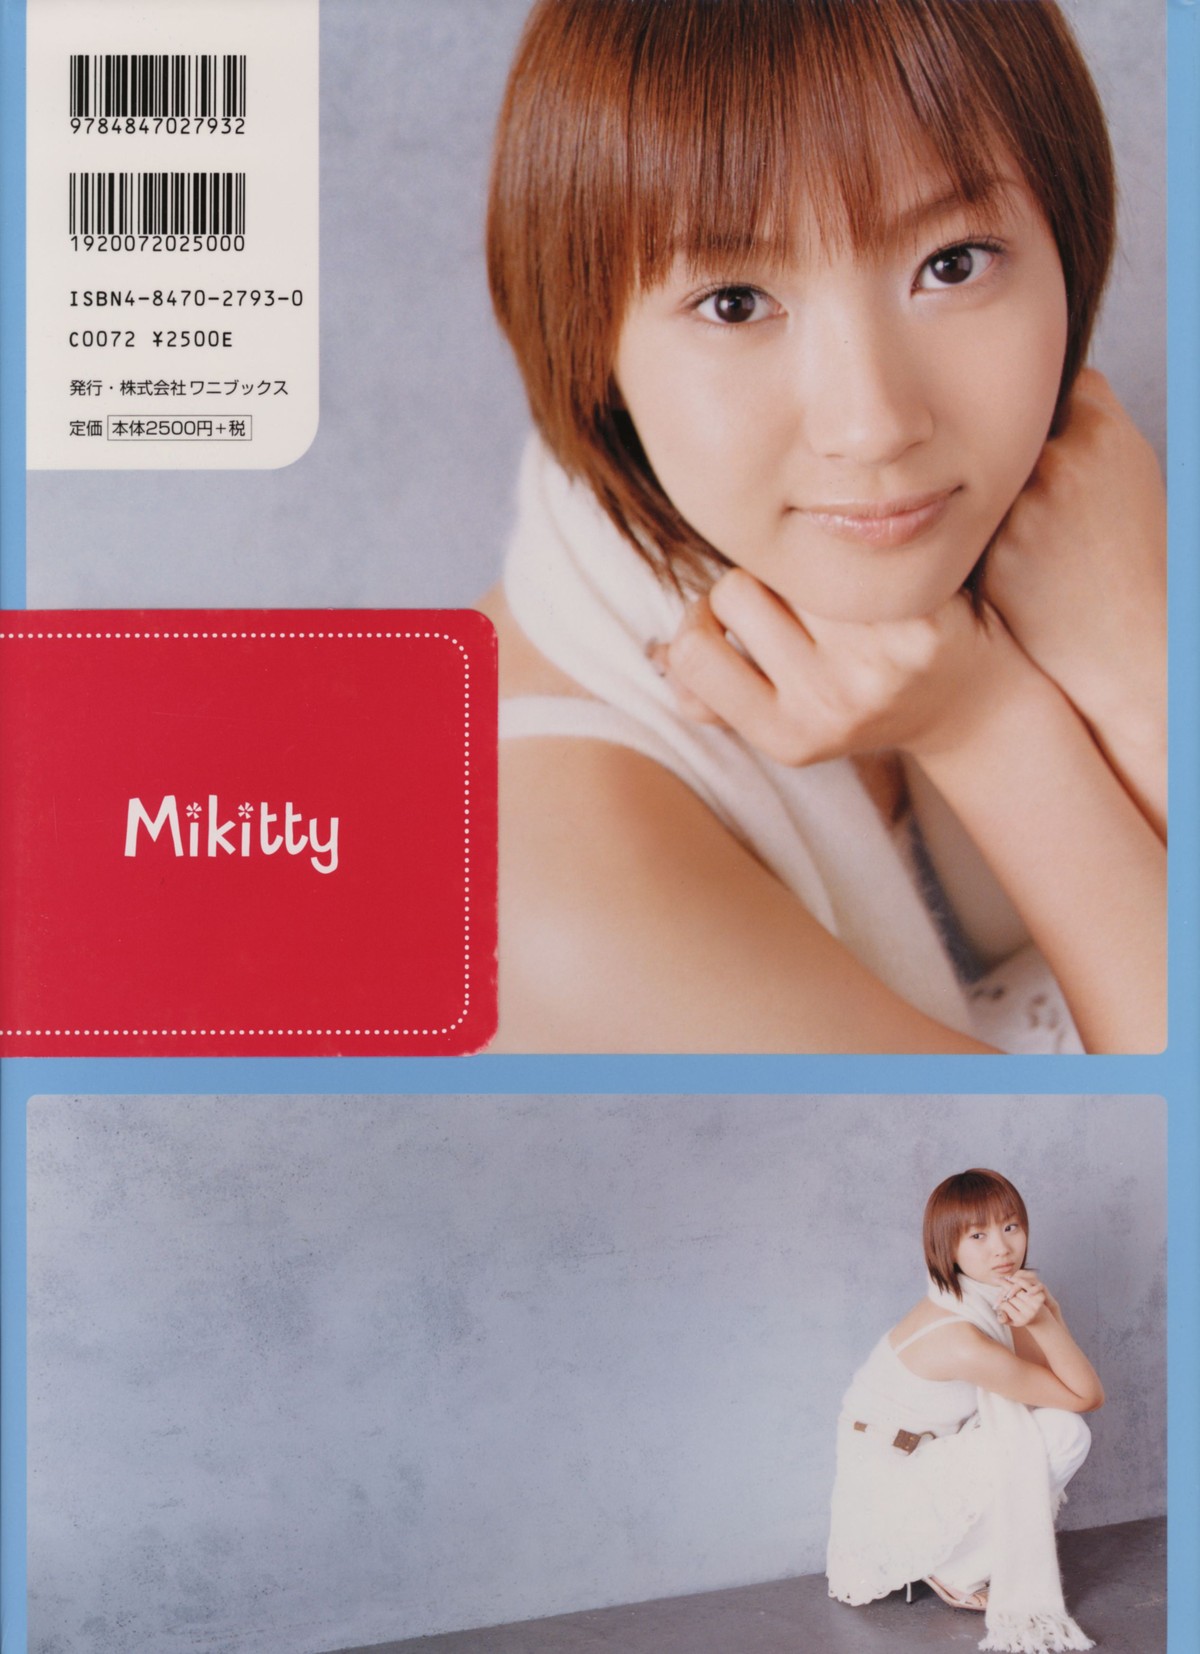 Photobook Miki Fujimoto 藤本美貴 Mikitty 0090 8848493164.jpg